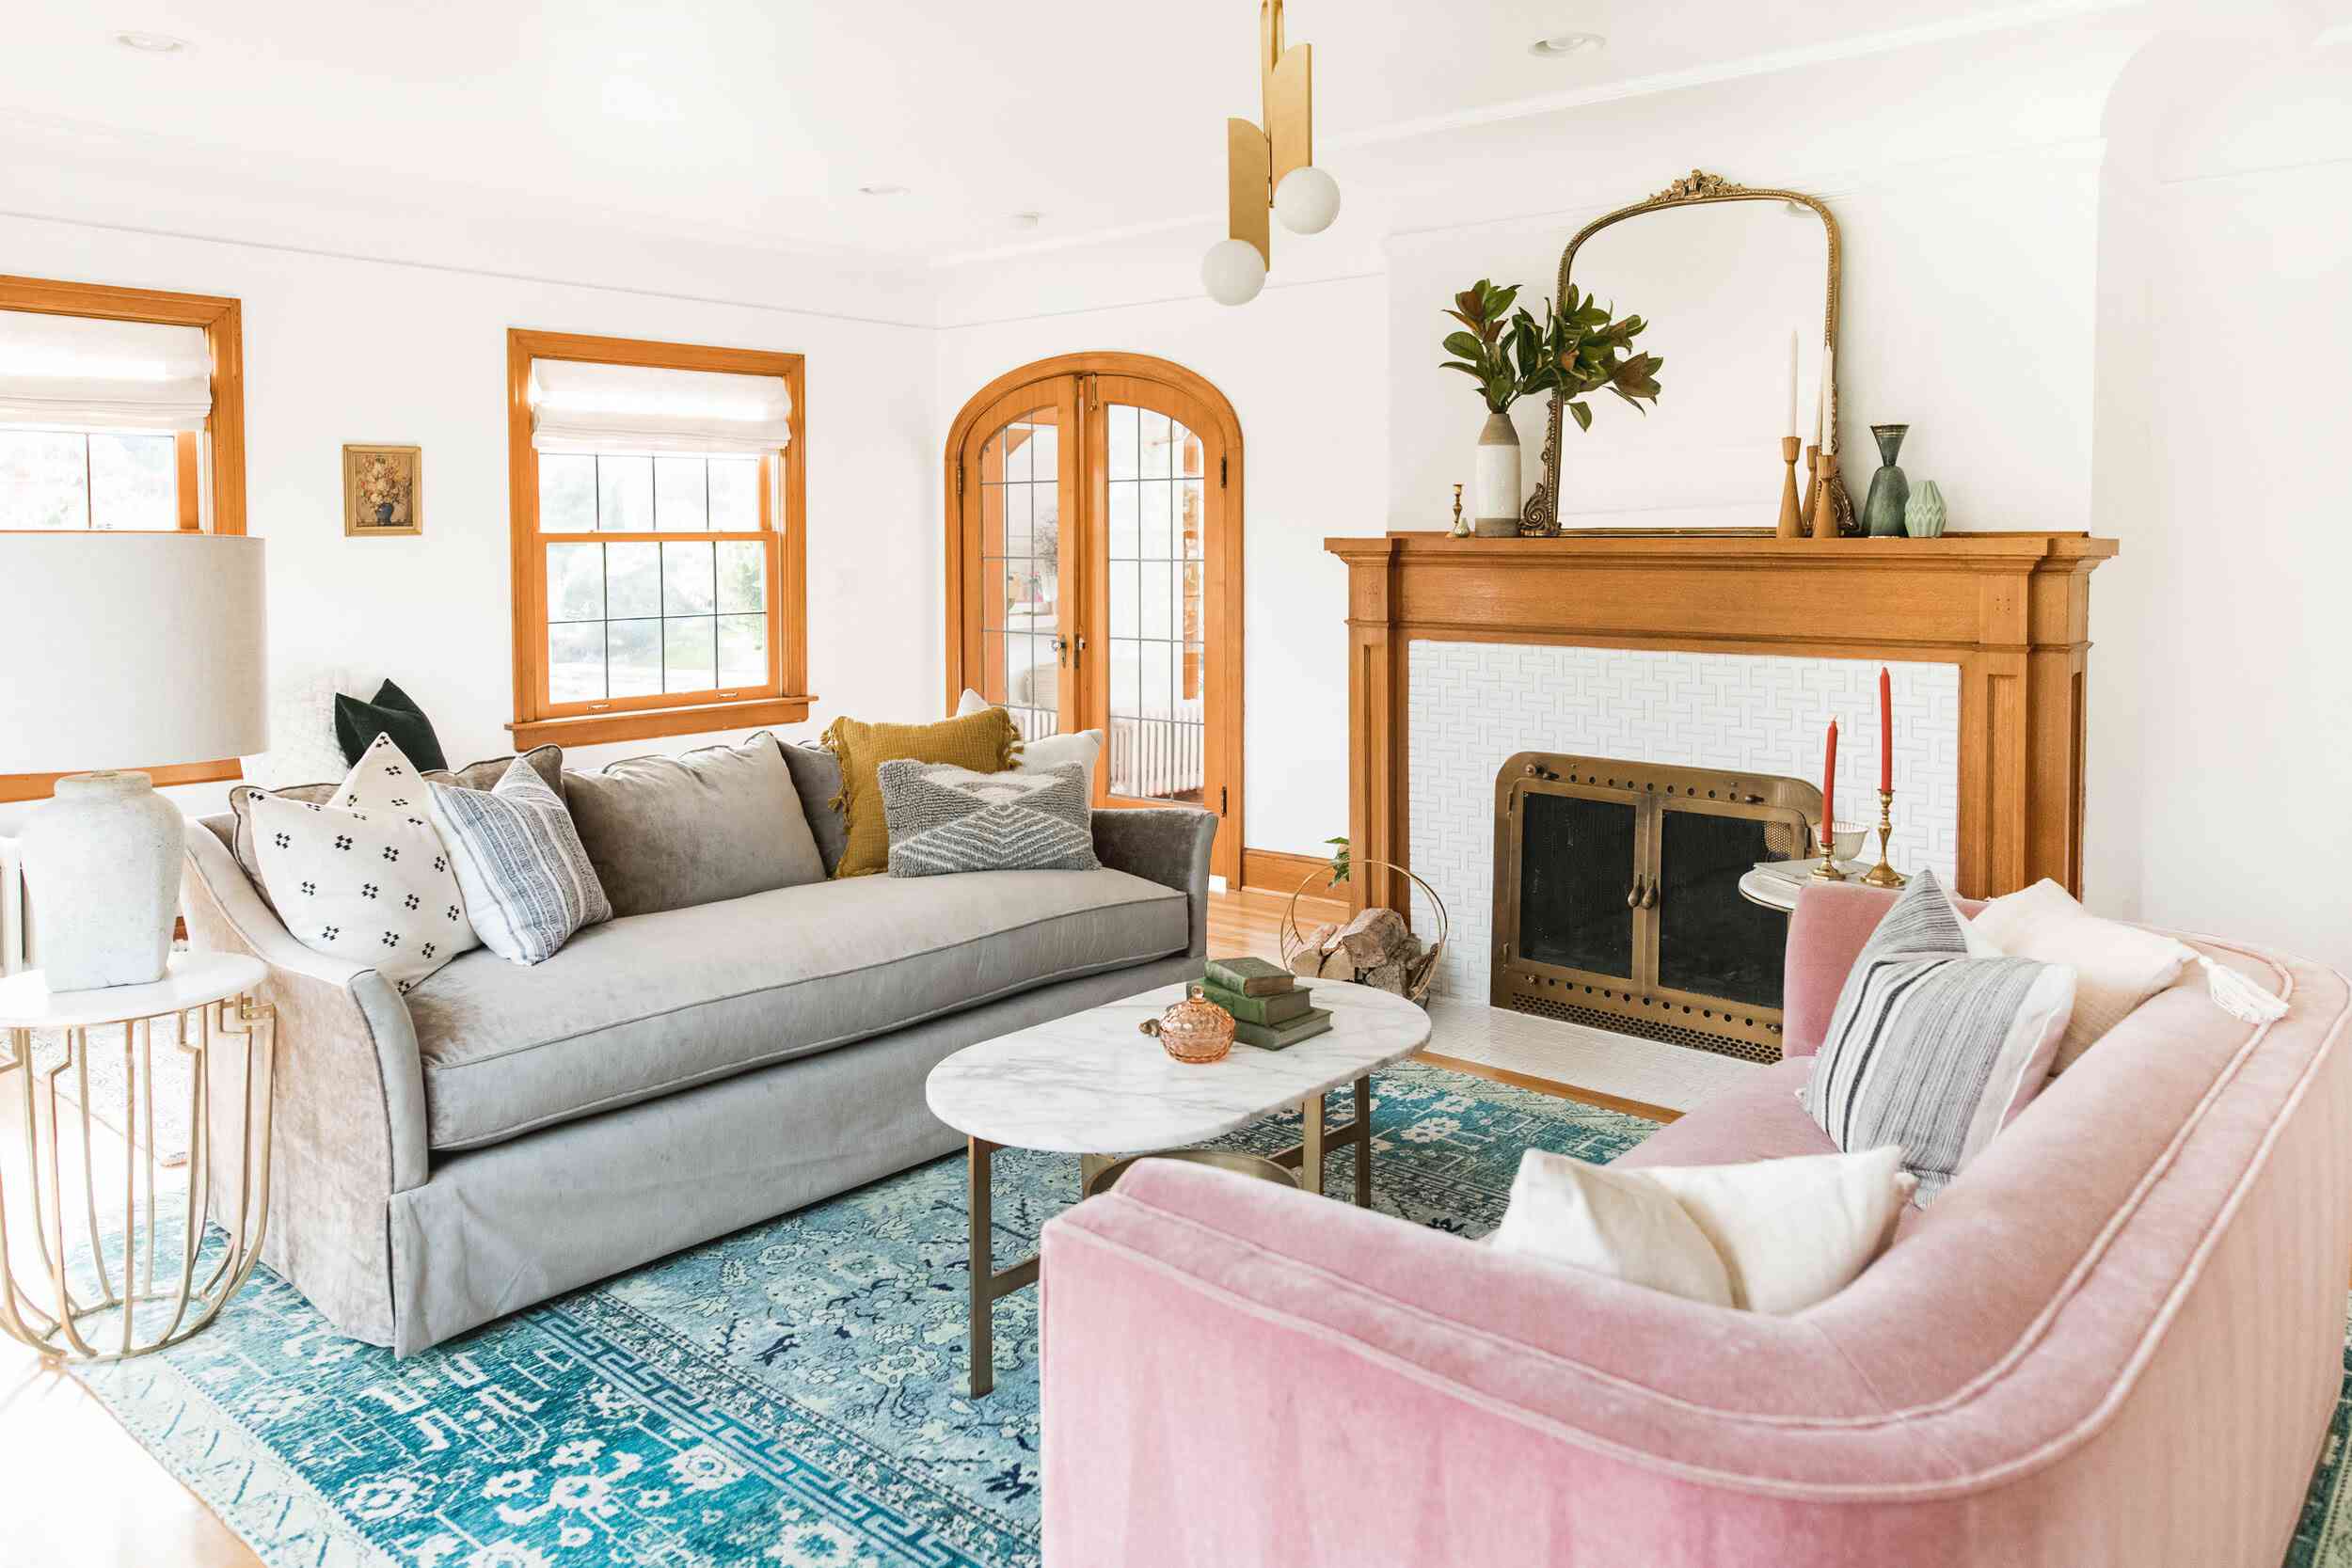 أريكة رمادية ووردية تواجه بعضهما البعض في غرفة المعيشة مع مدفأة